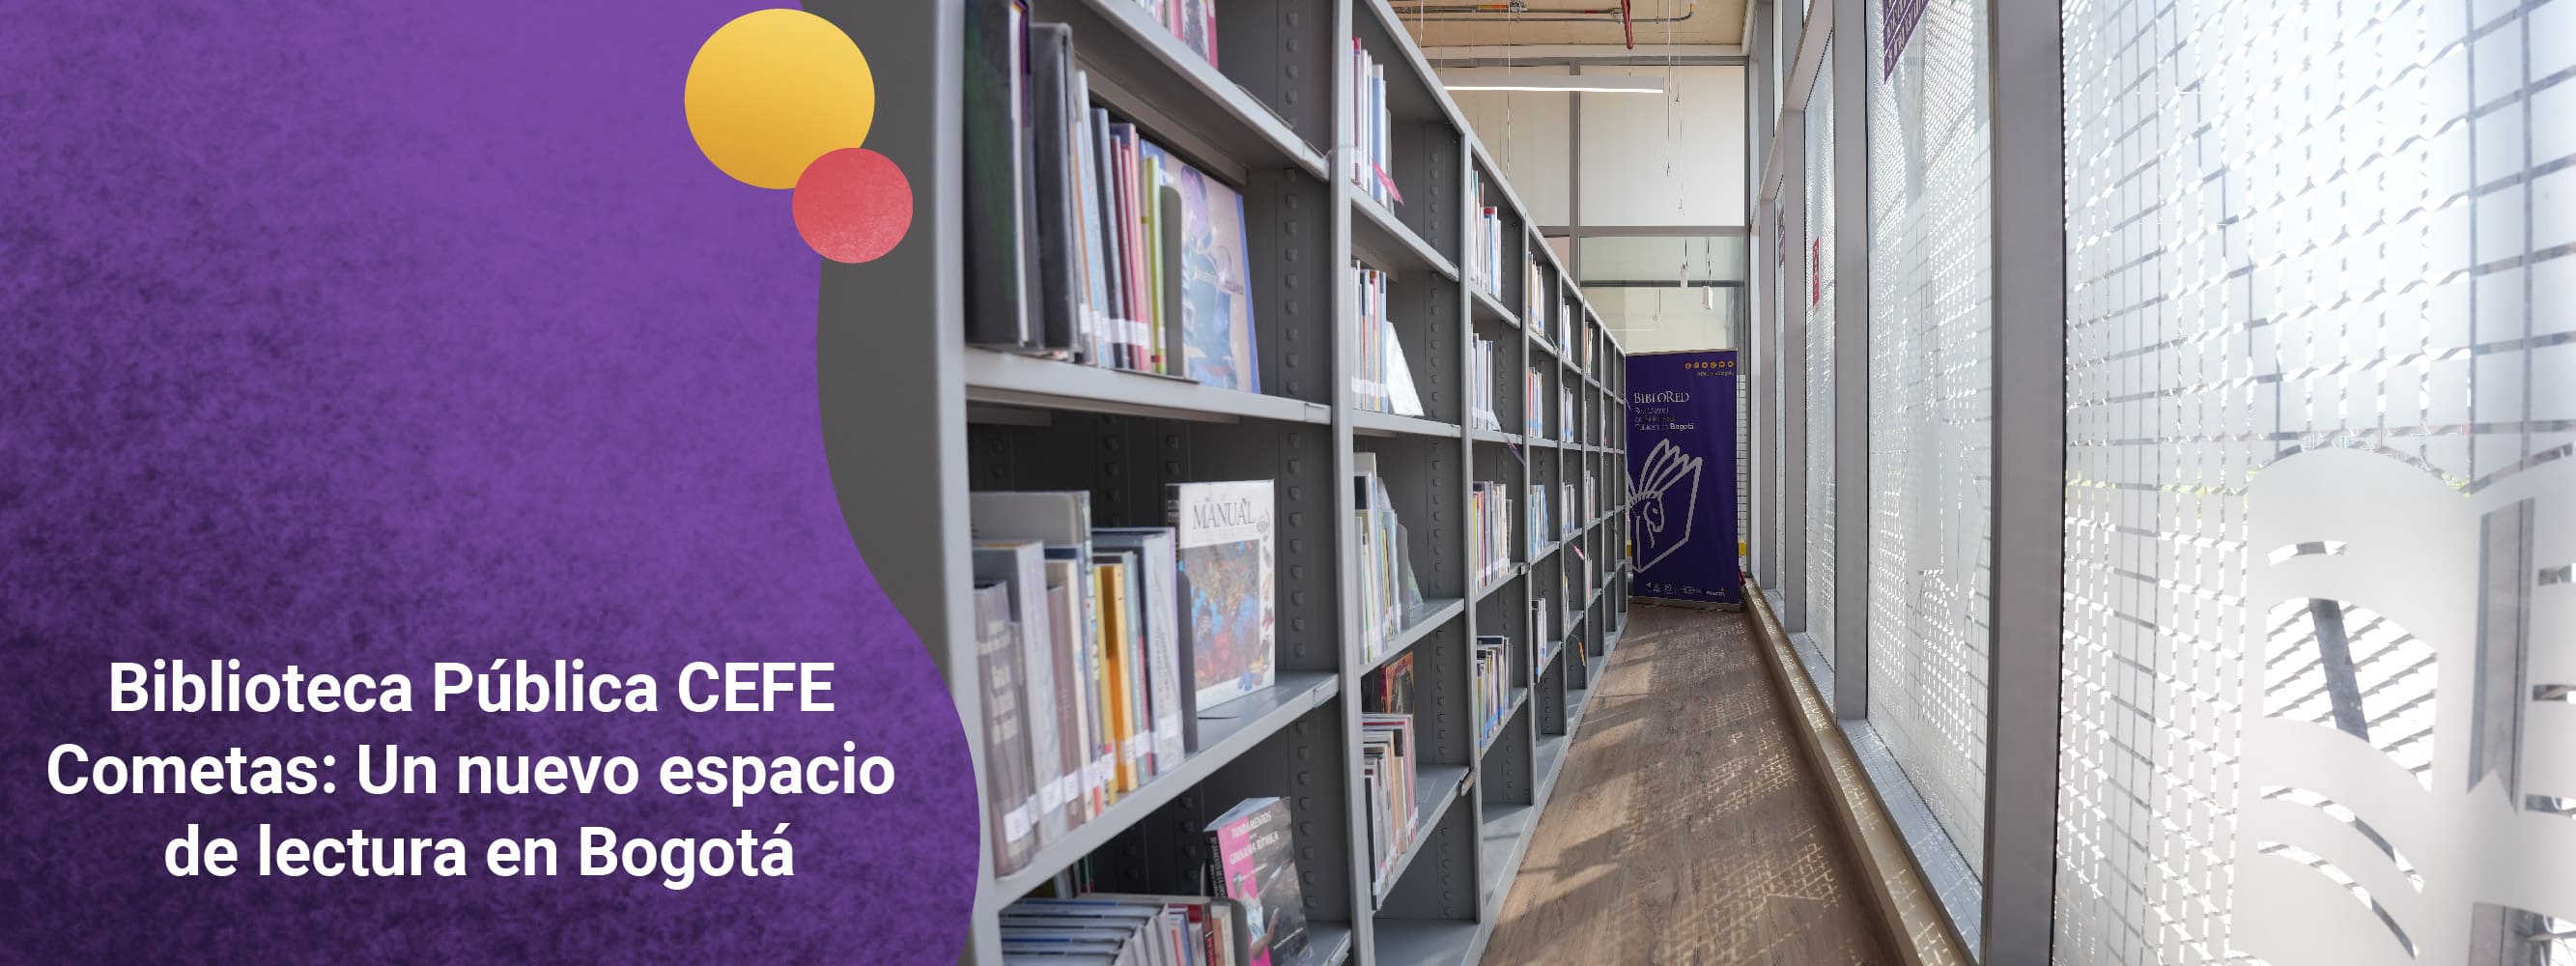 Biblioteca Pública CEFE Cometas: Un nuevo espacio de lectura en Bogotá